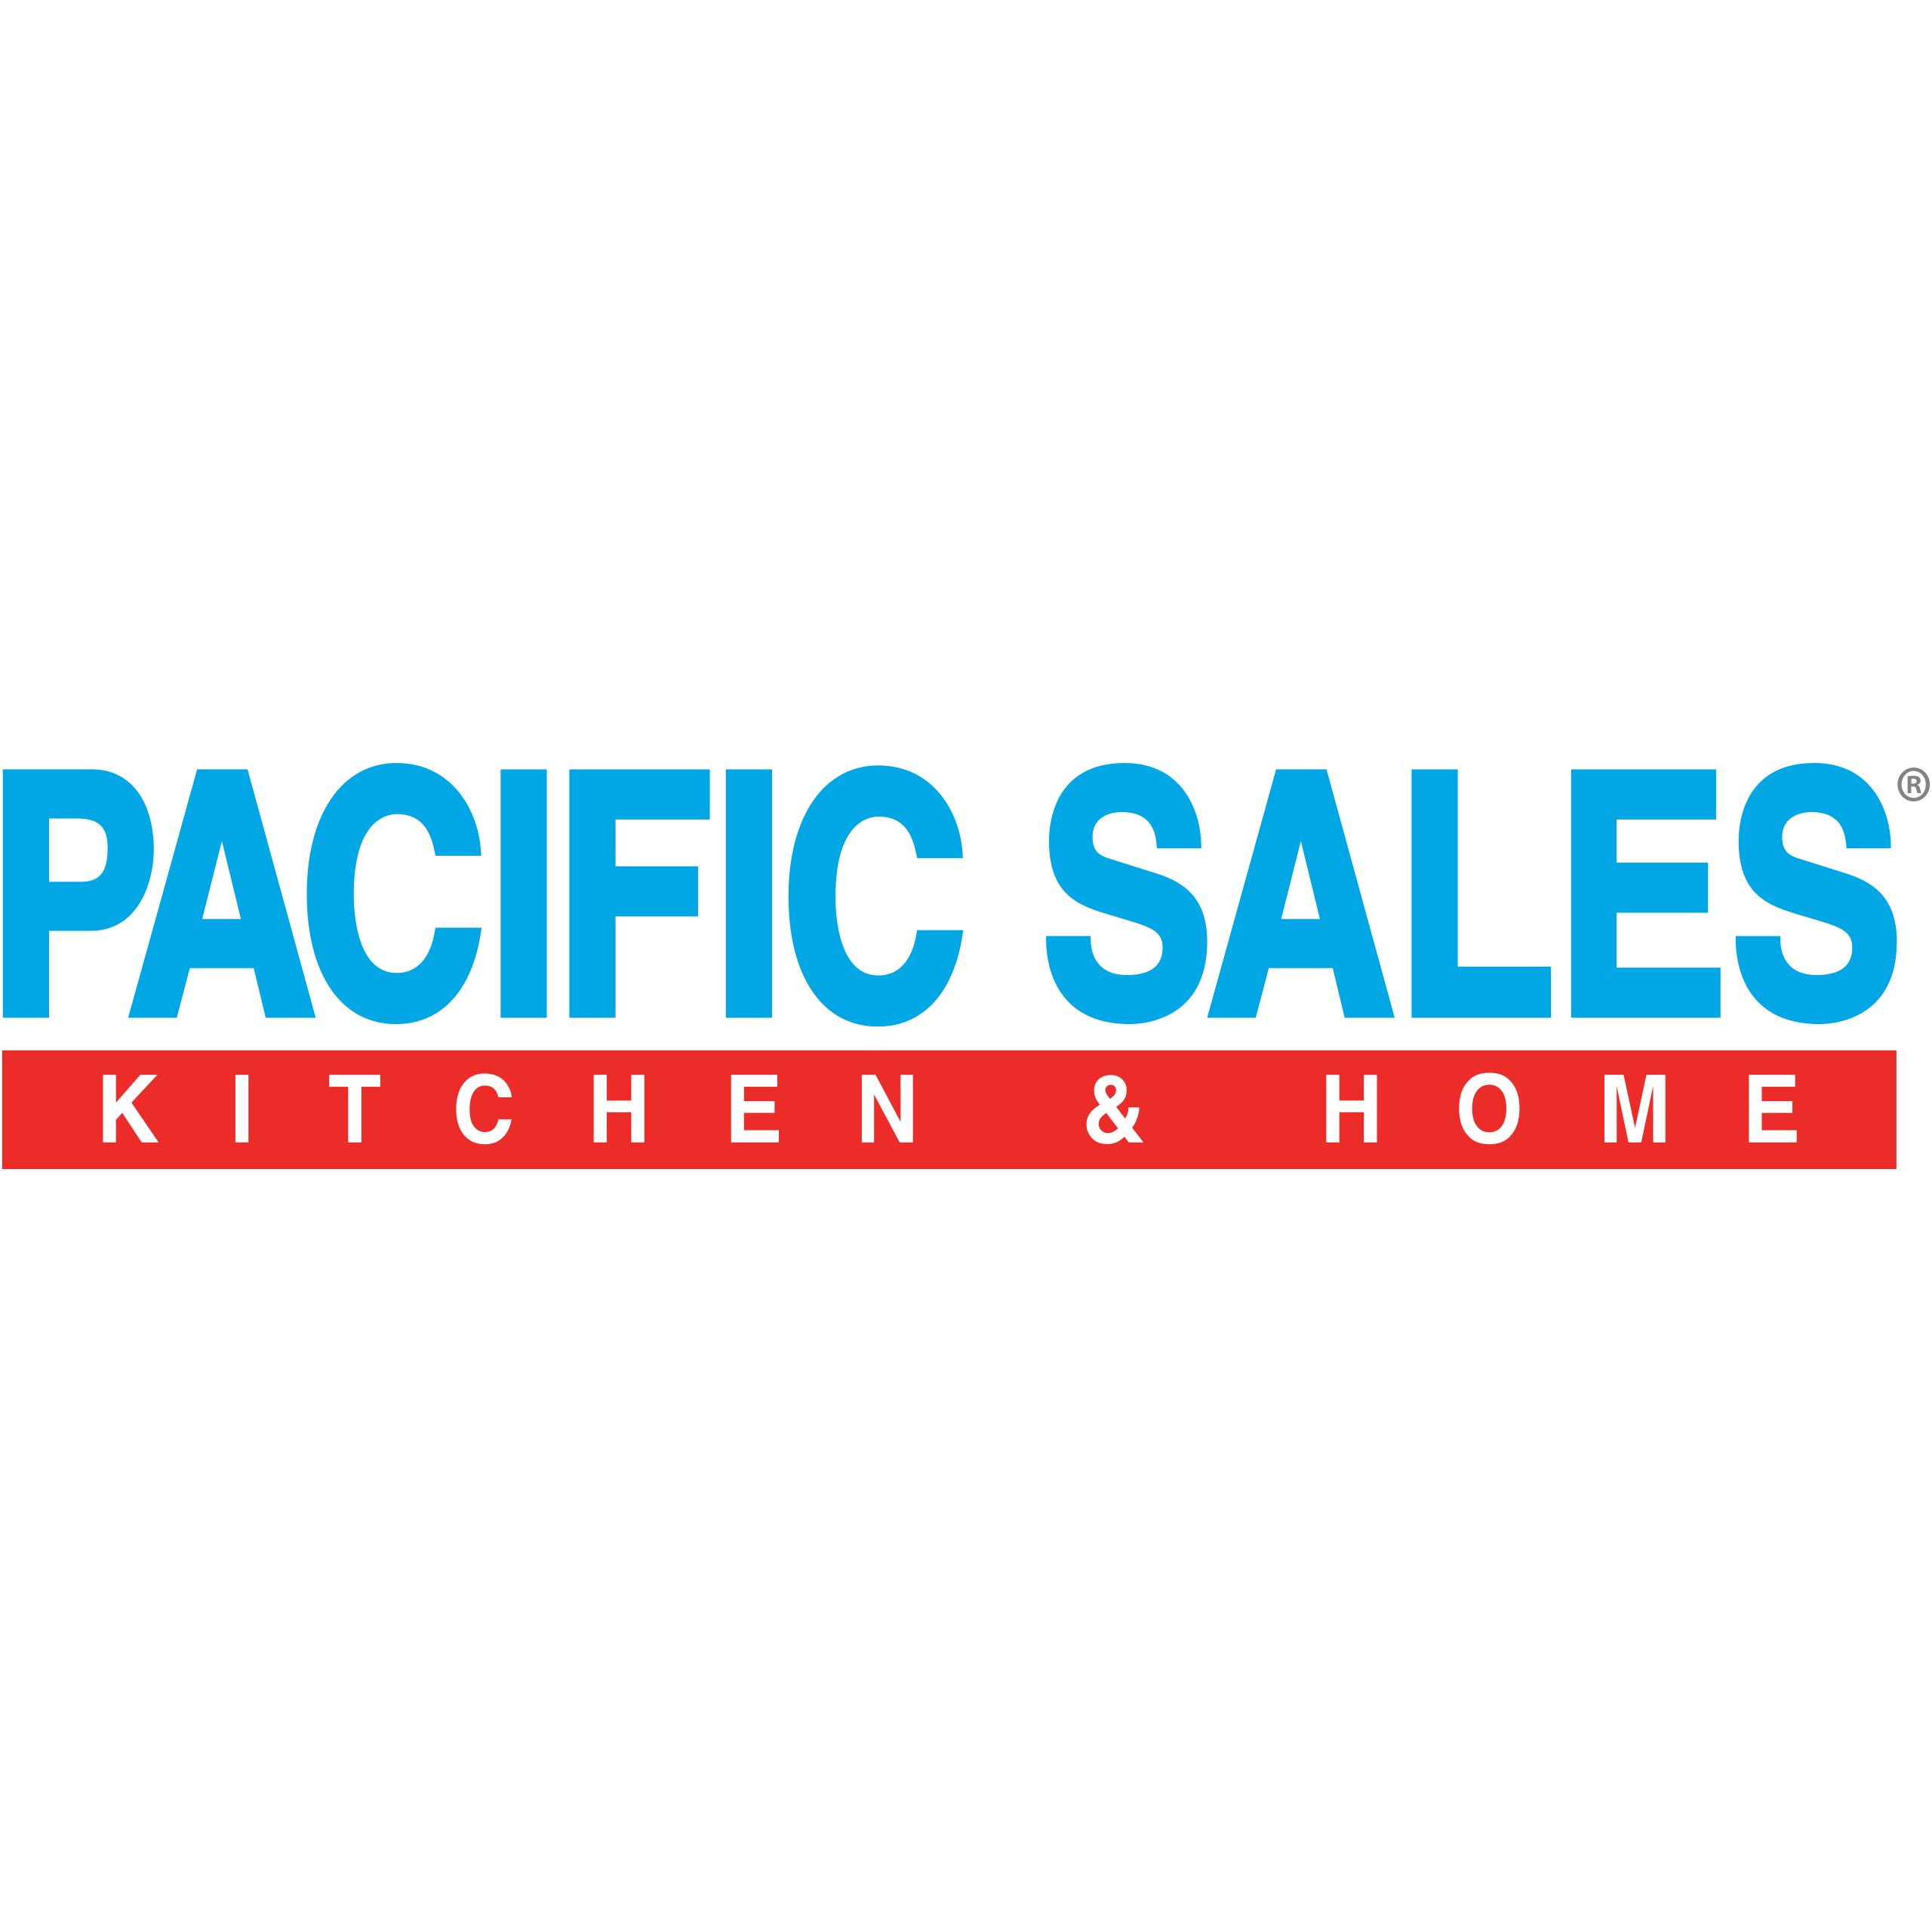 Pacific Sales Kitchen & Home Escondido - Escondido, CA 92025 - (760)740-7099 | ShowMeLocal.com